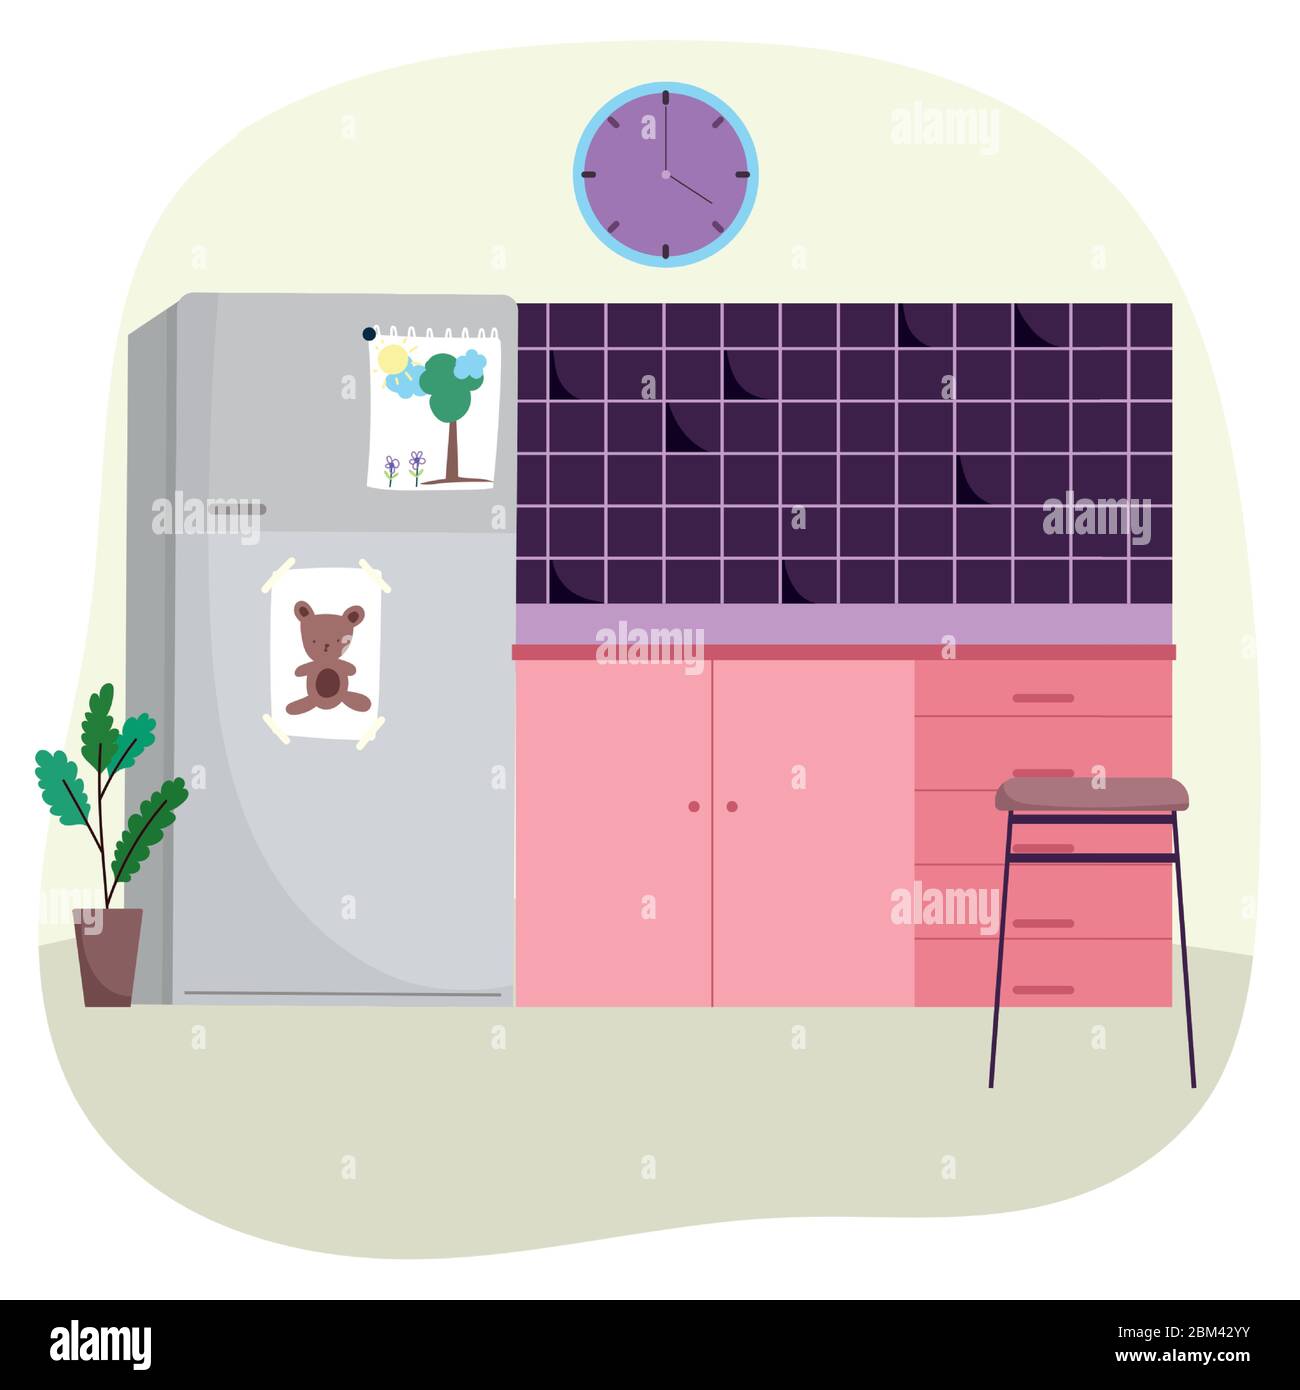 cucina interna frigorifero piastrelle muro sedia orologio e pianta  incapsulata disegno vettoriale illustrazione Immagine e Vettoriale - Alamy